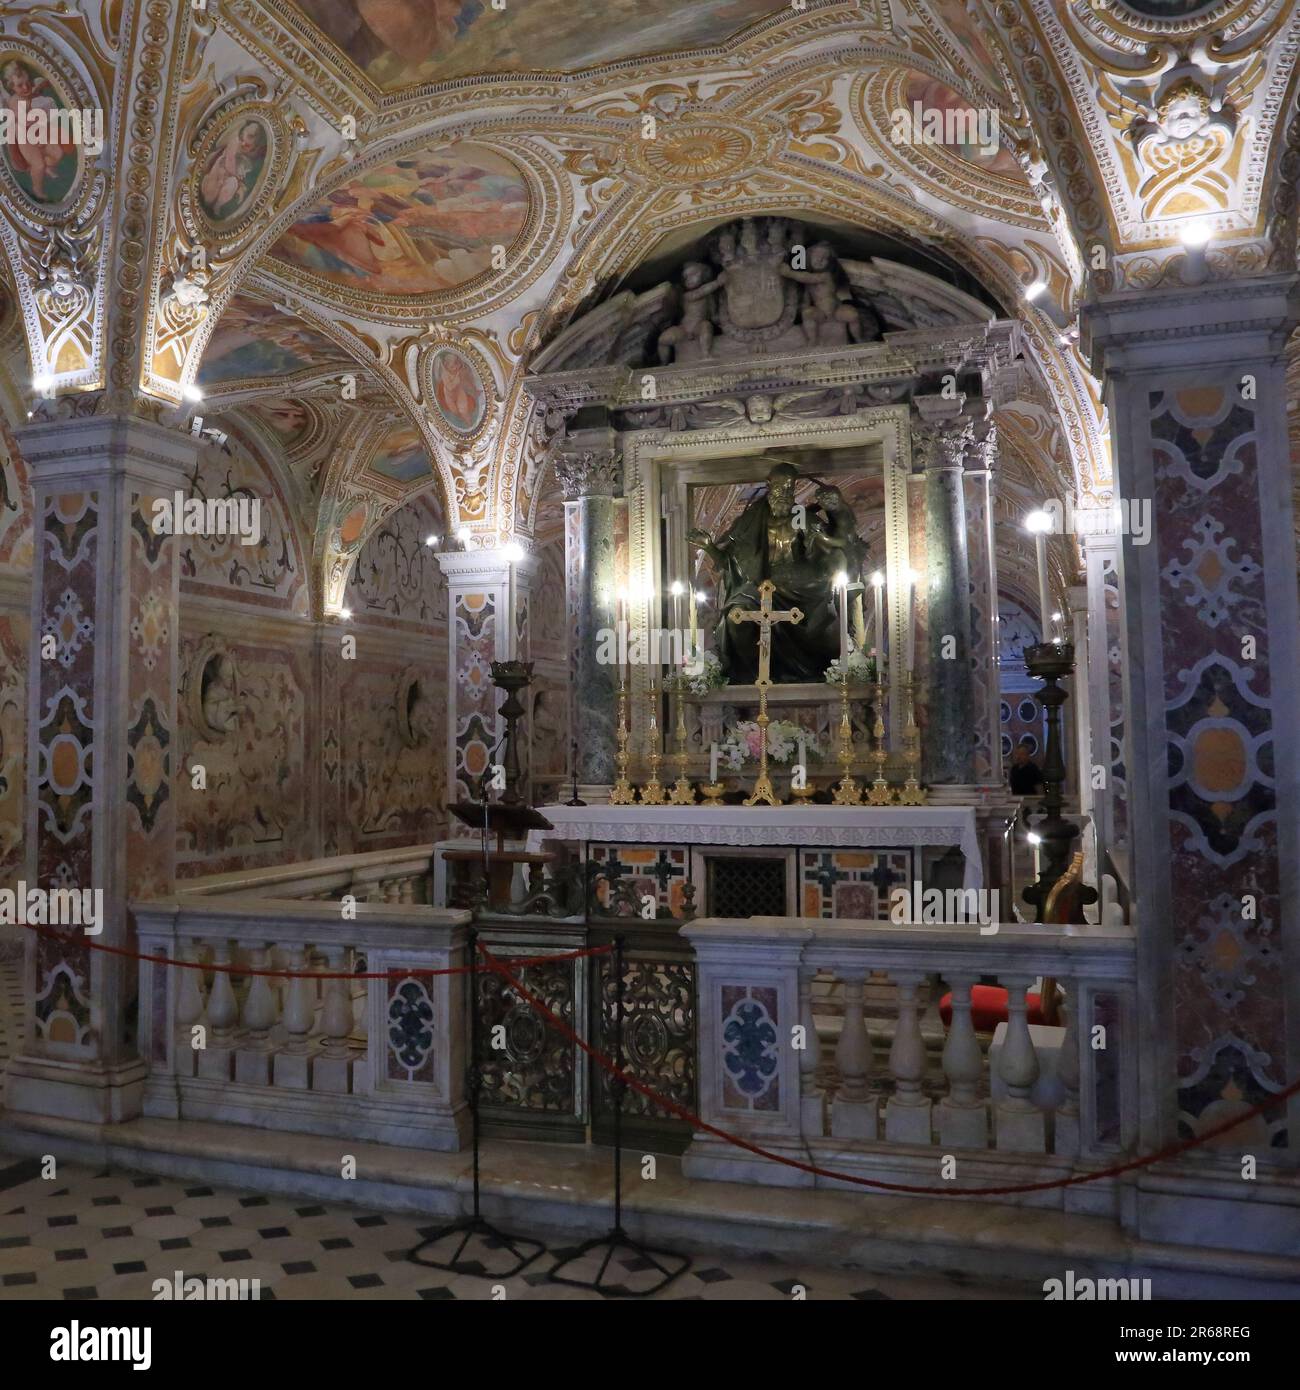 The Crypt of Salerno Cathedral, Italy. Cripta del duomo di Salerno Stock Photo